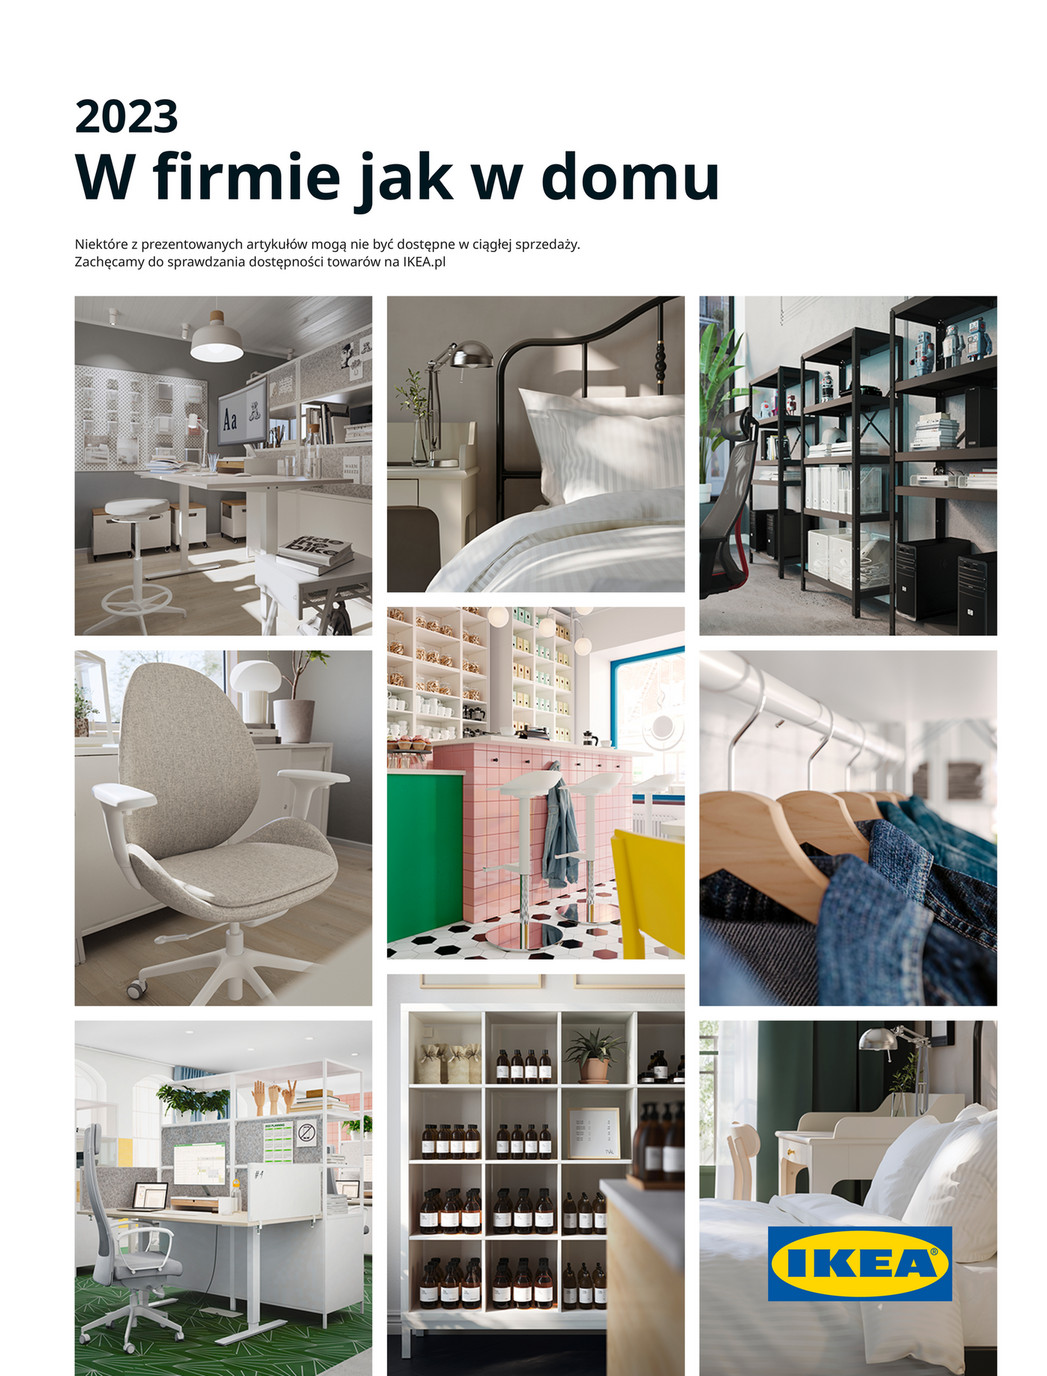 W firmie jak w d... - Ikea Gazetka promocyjna - W tym tygodniu - oferta 01/02/2023 - 01/03/2023